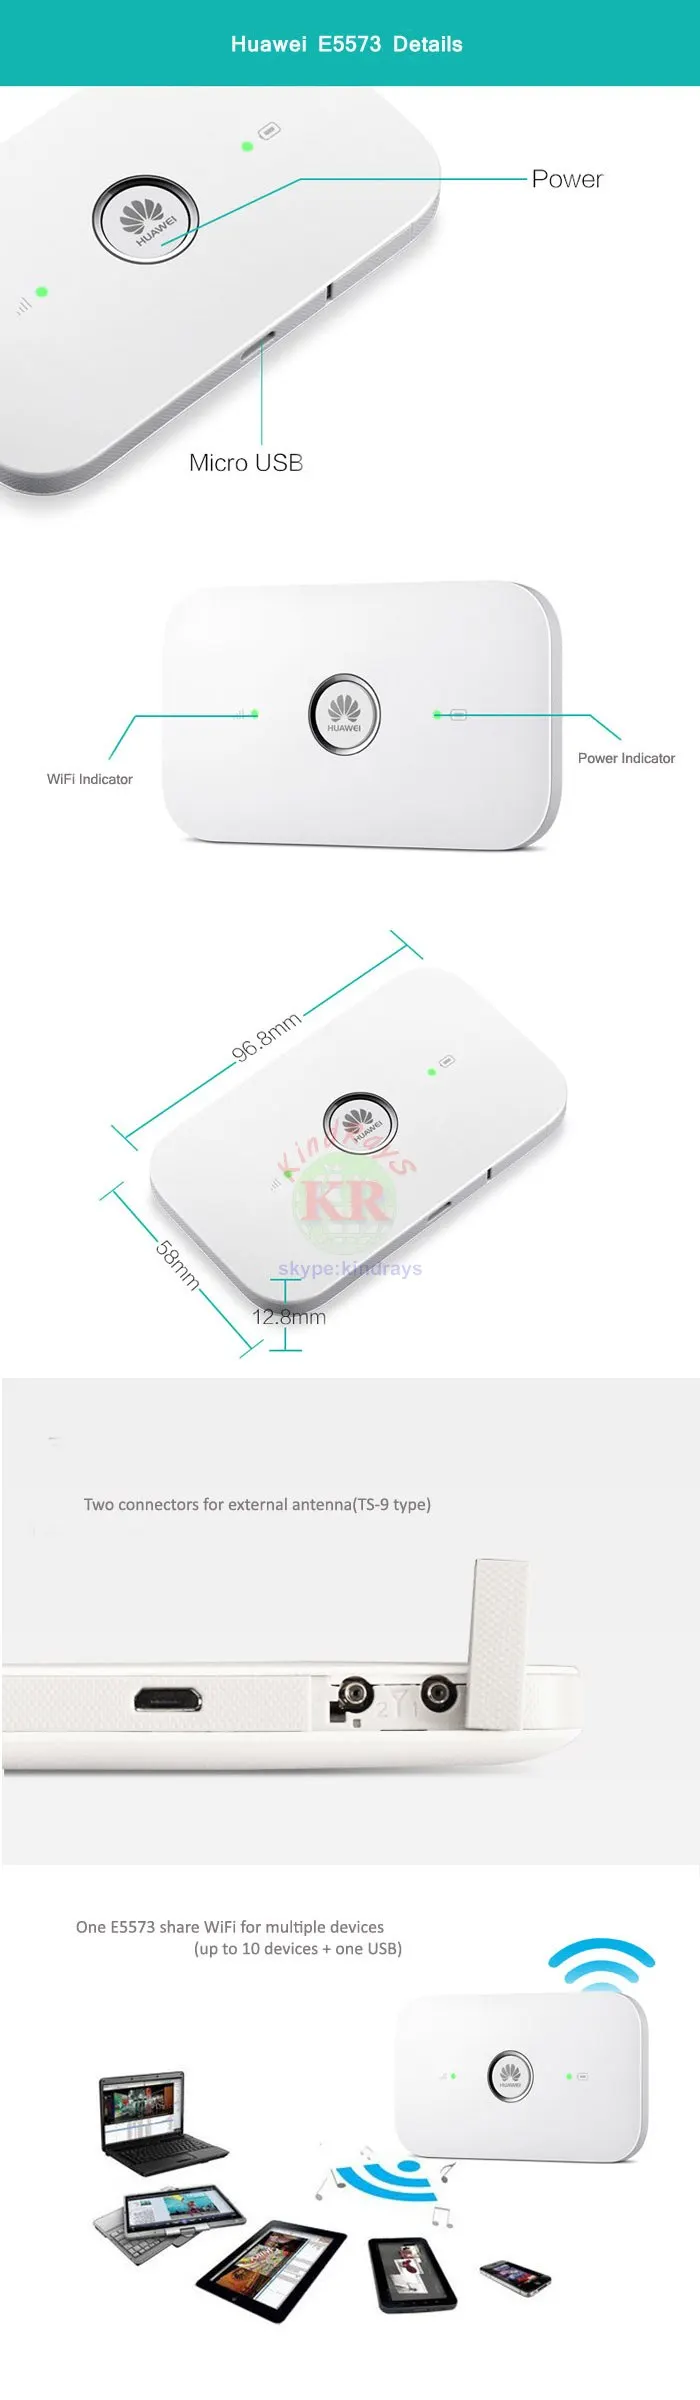 Разблокированный huawei E5573 4g wifi модем E5573s-606 3g 4g Роутер 150m 3g 4g wifi роутер с слотом для sim-карты Портативная точка доступа E5573s